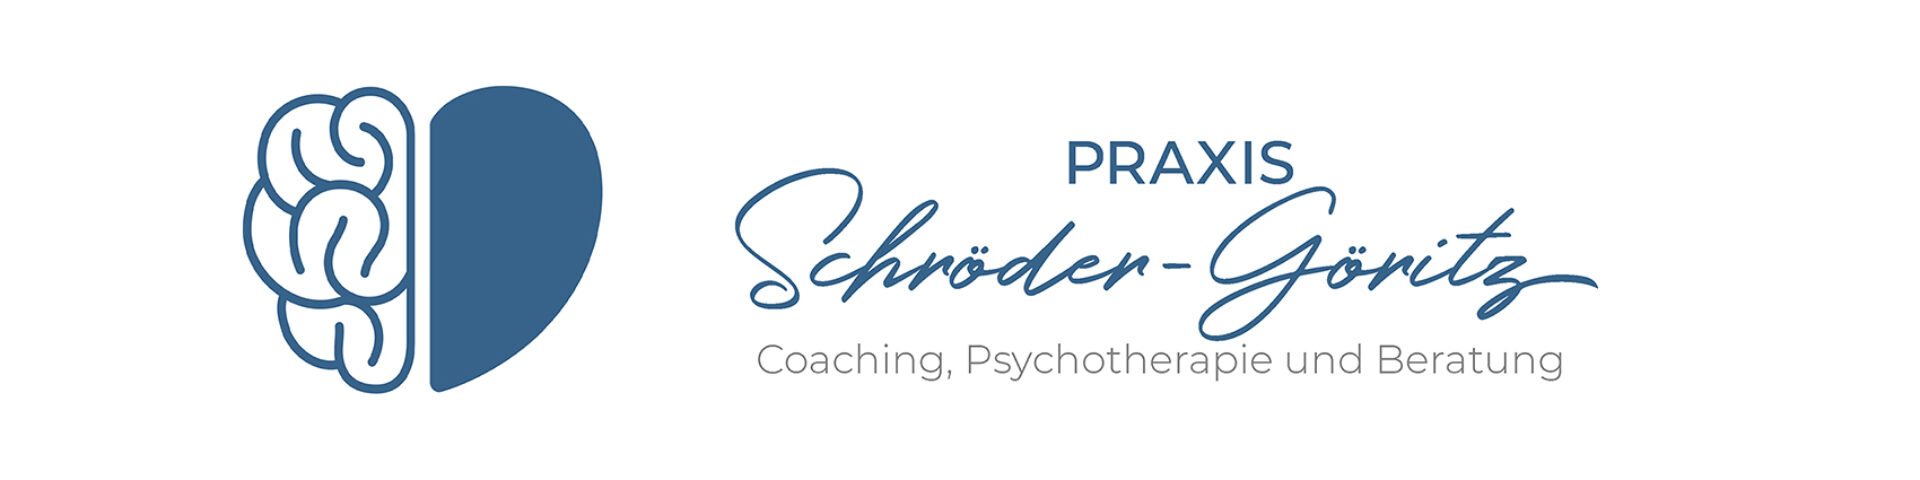 Psychotherapie, Coaching & Psychologische Beratung